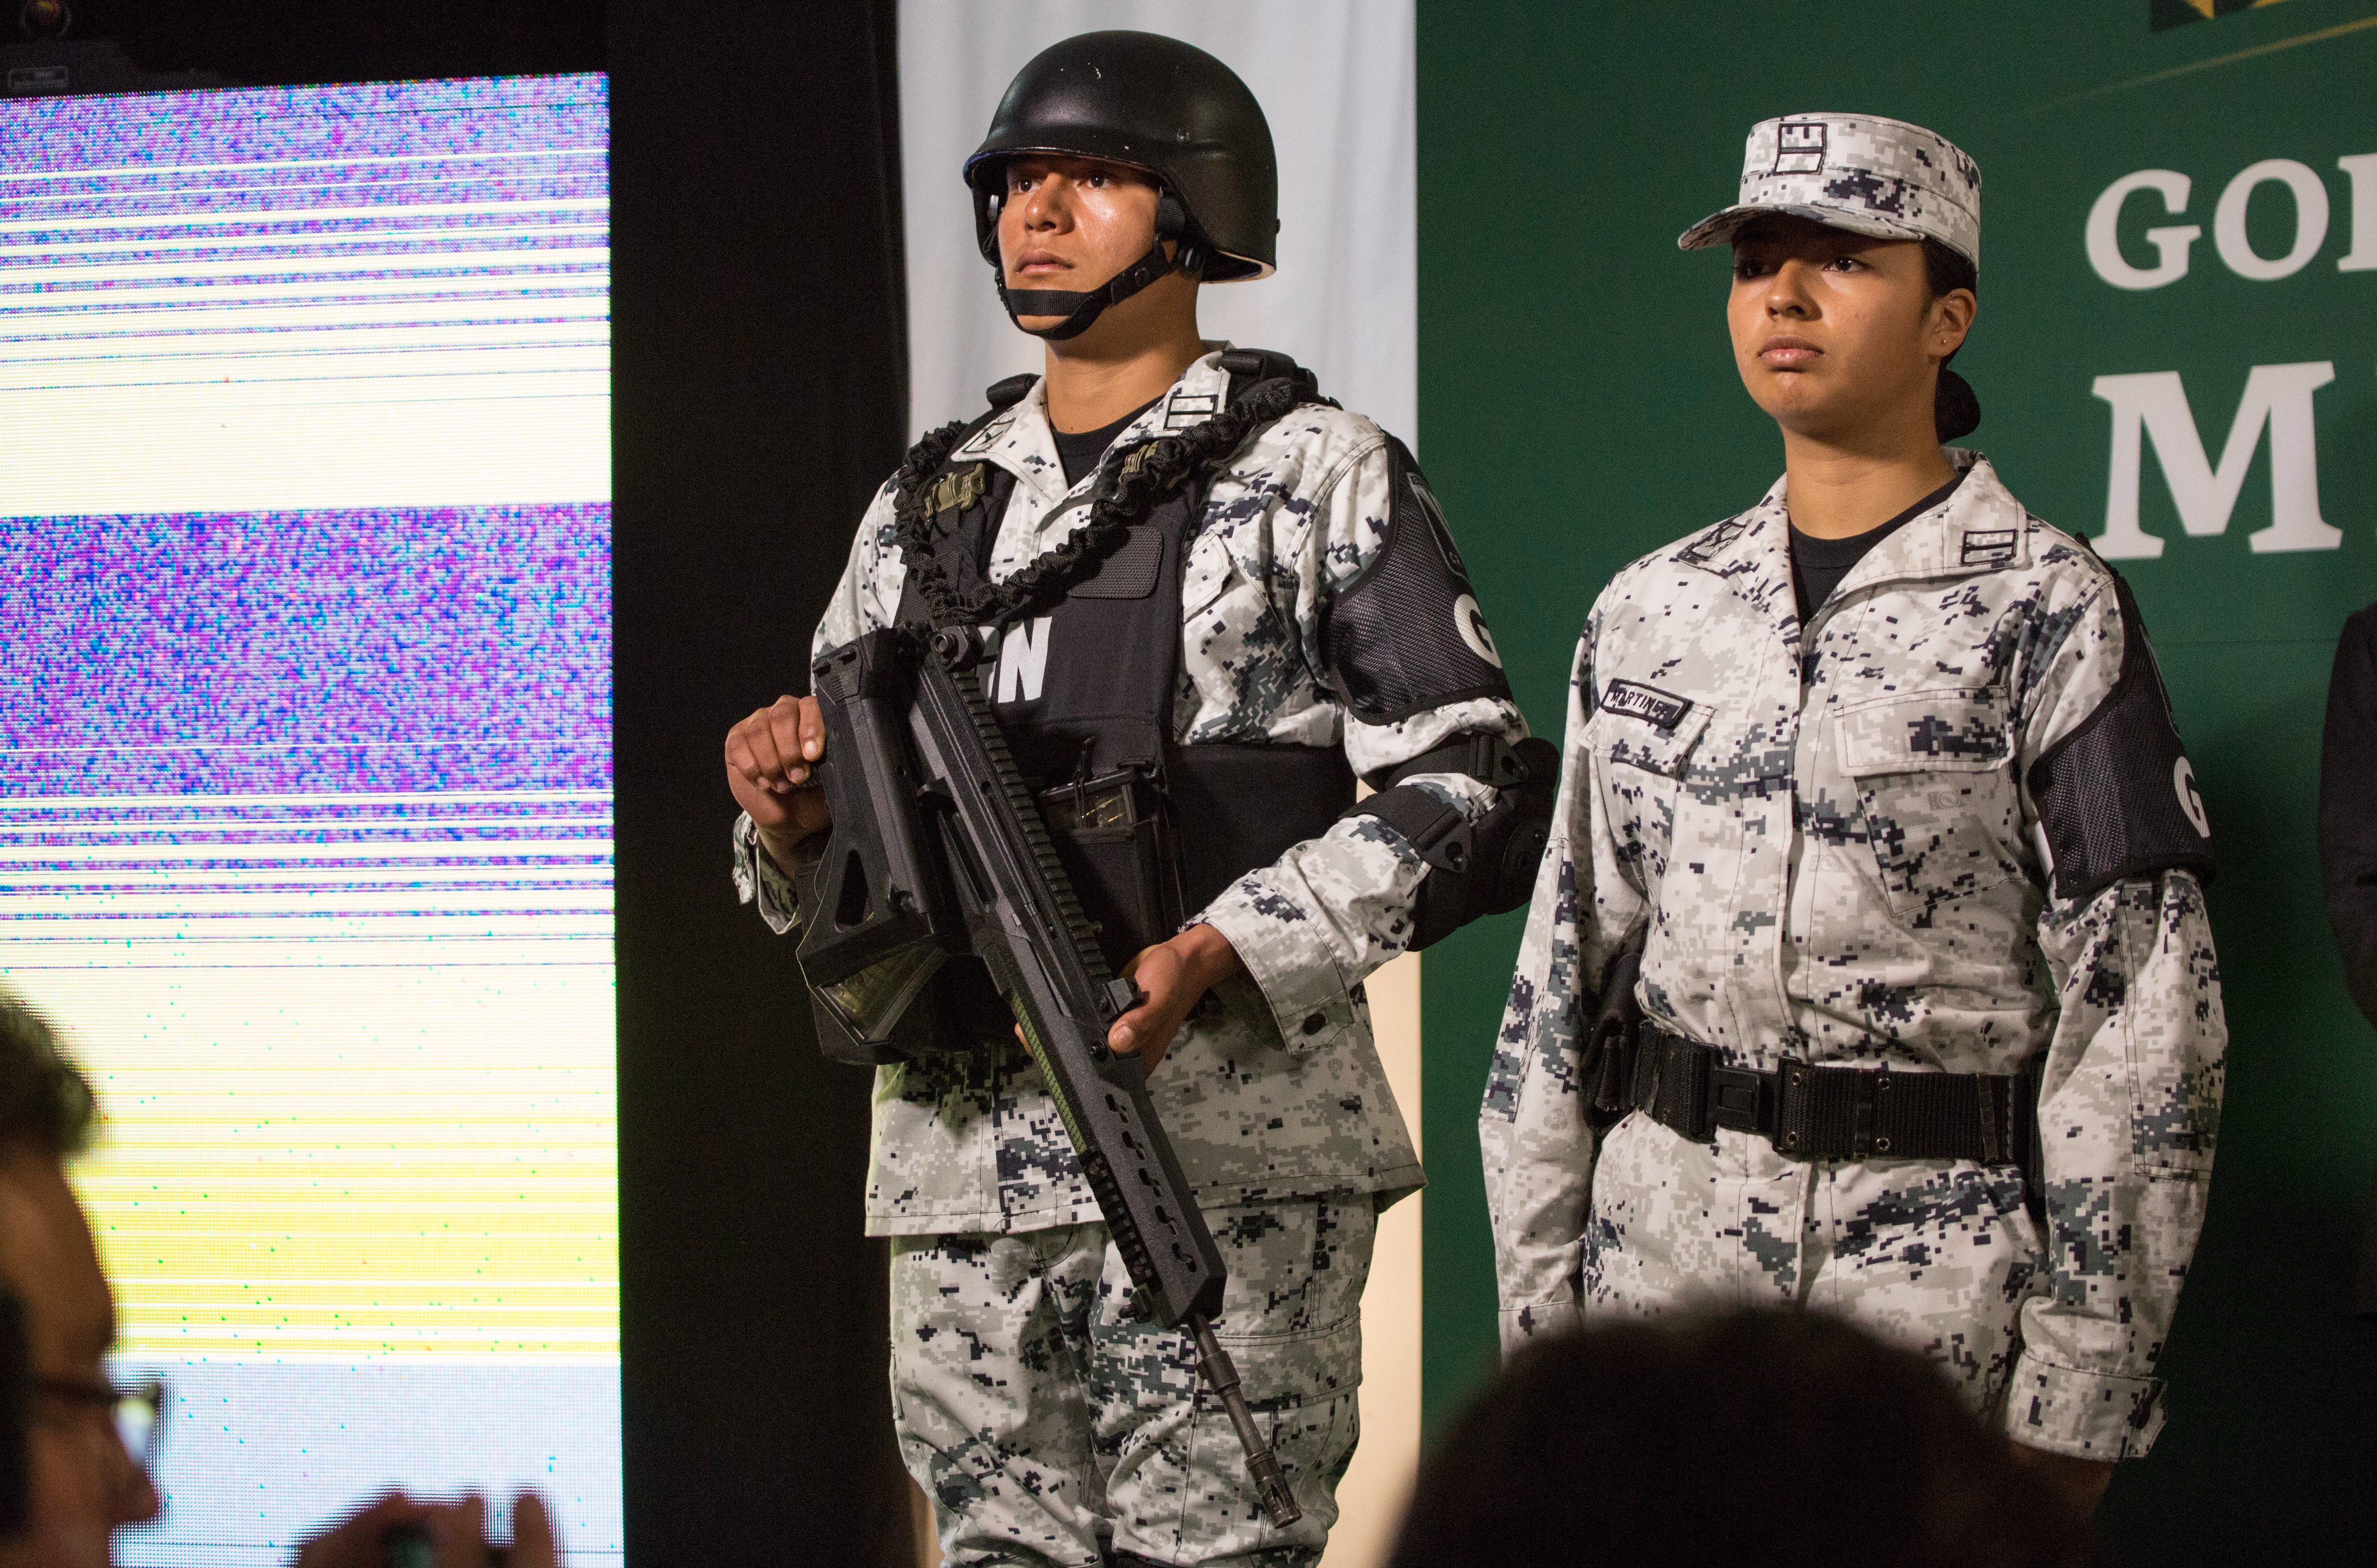 La Guardia Nacional tiene estructura y mandos militares aunque se presenta como corporación civil (FOTO: OMAR MARTÍNEZ /CUARTOSCURO.COM)